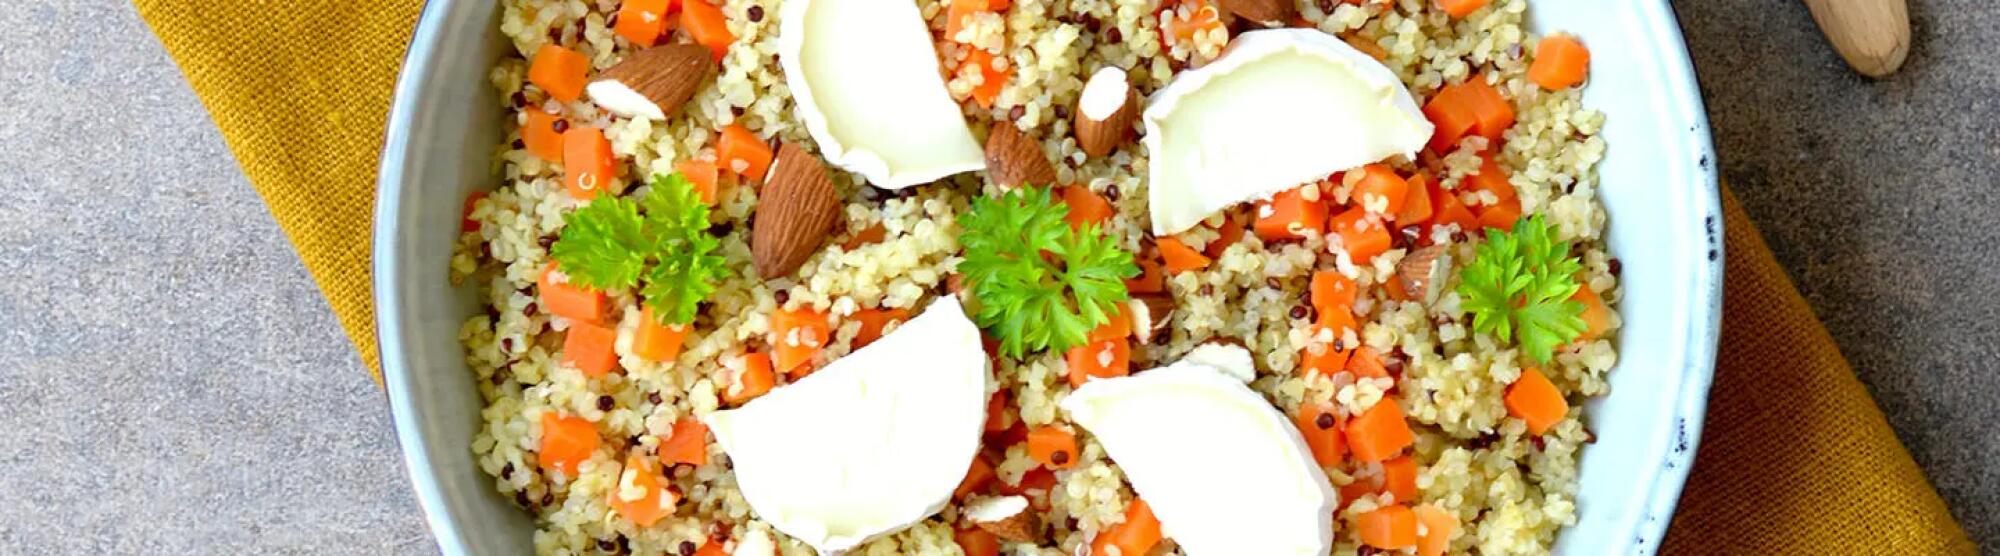 Recette : Risotto de quinoa aux carottes et chèvre